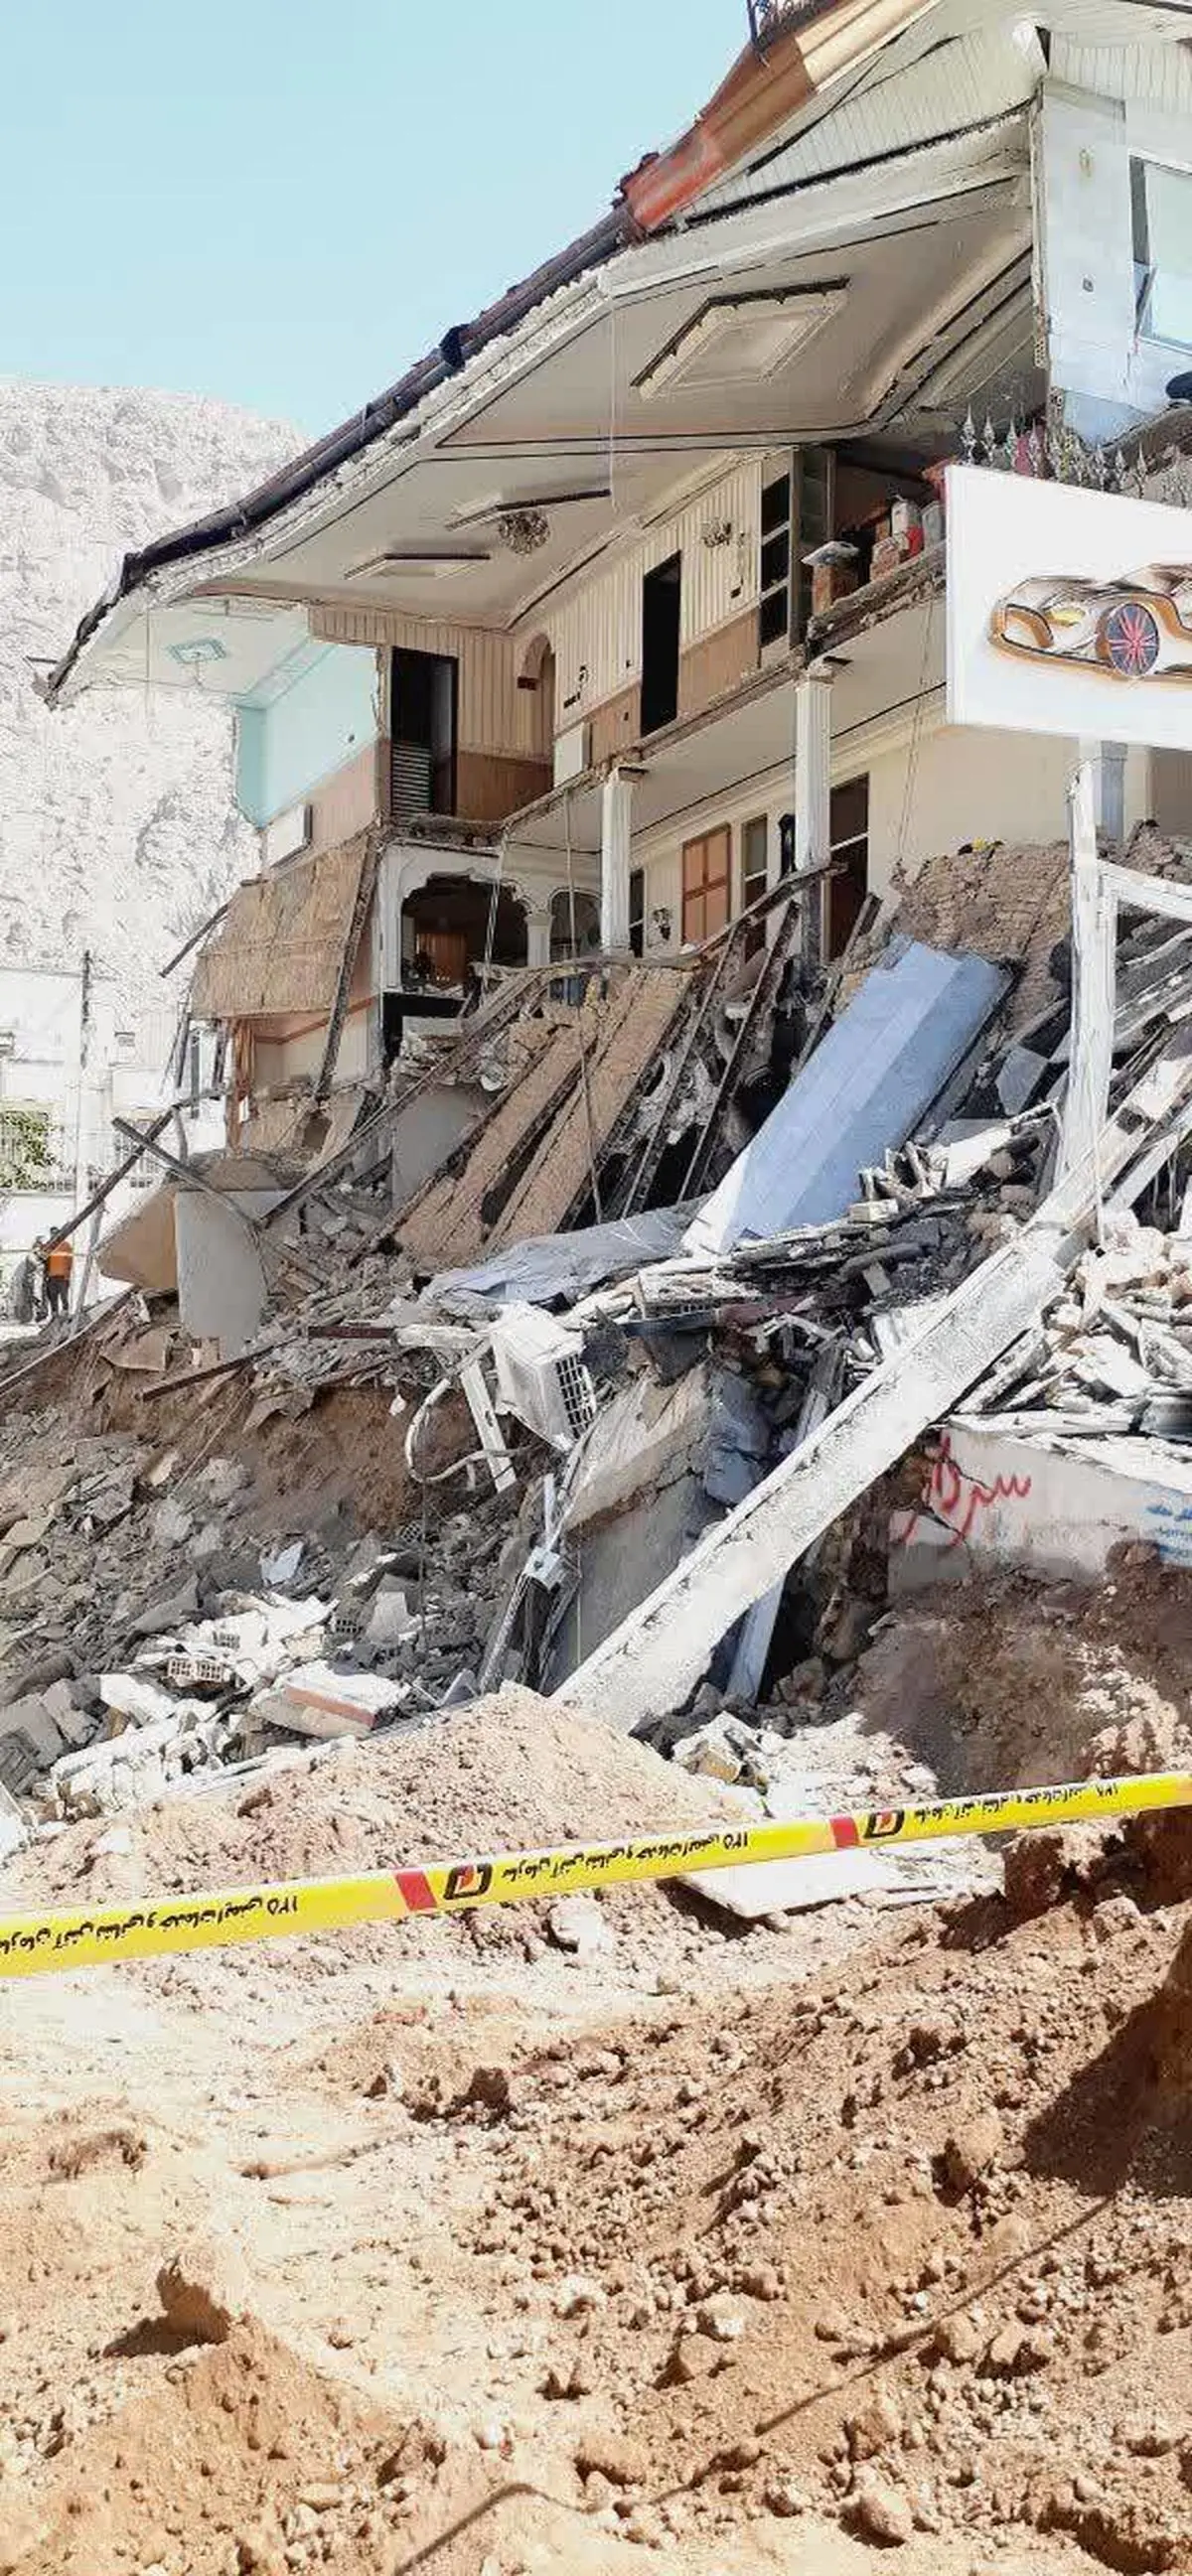 گود‌برداری غیر اصولی باعث تخریب یک ساختمان سه طبقه در کرمانشاه شد 	 	 			
